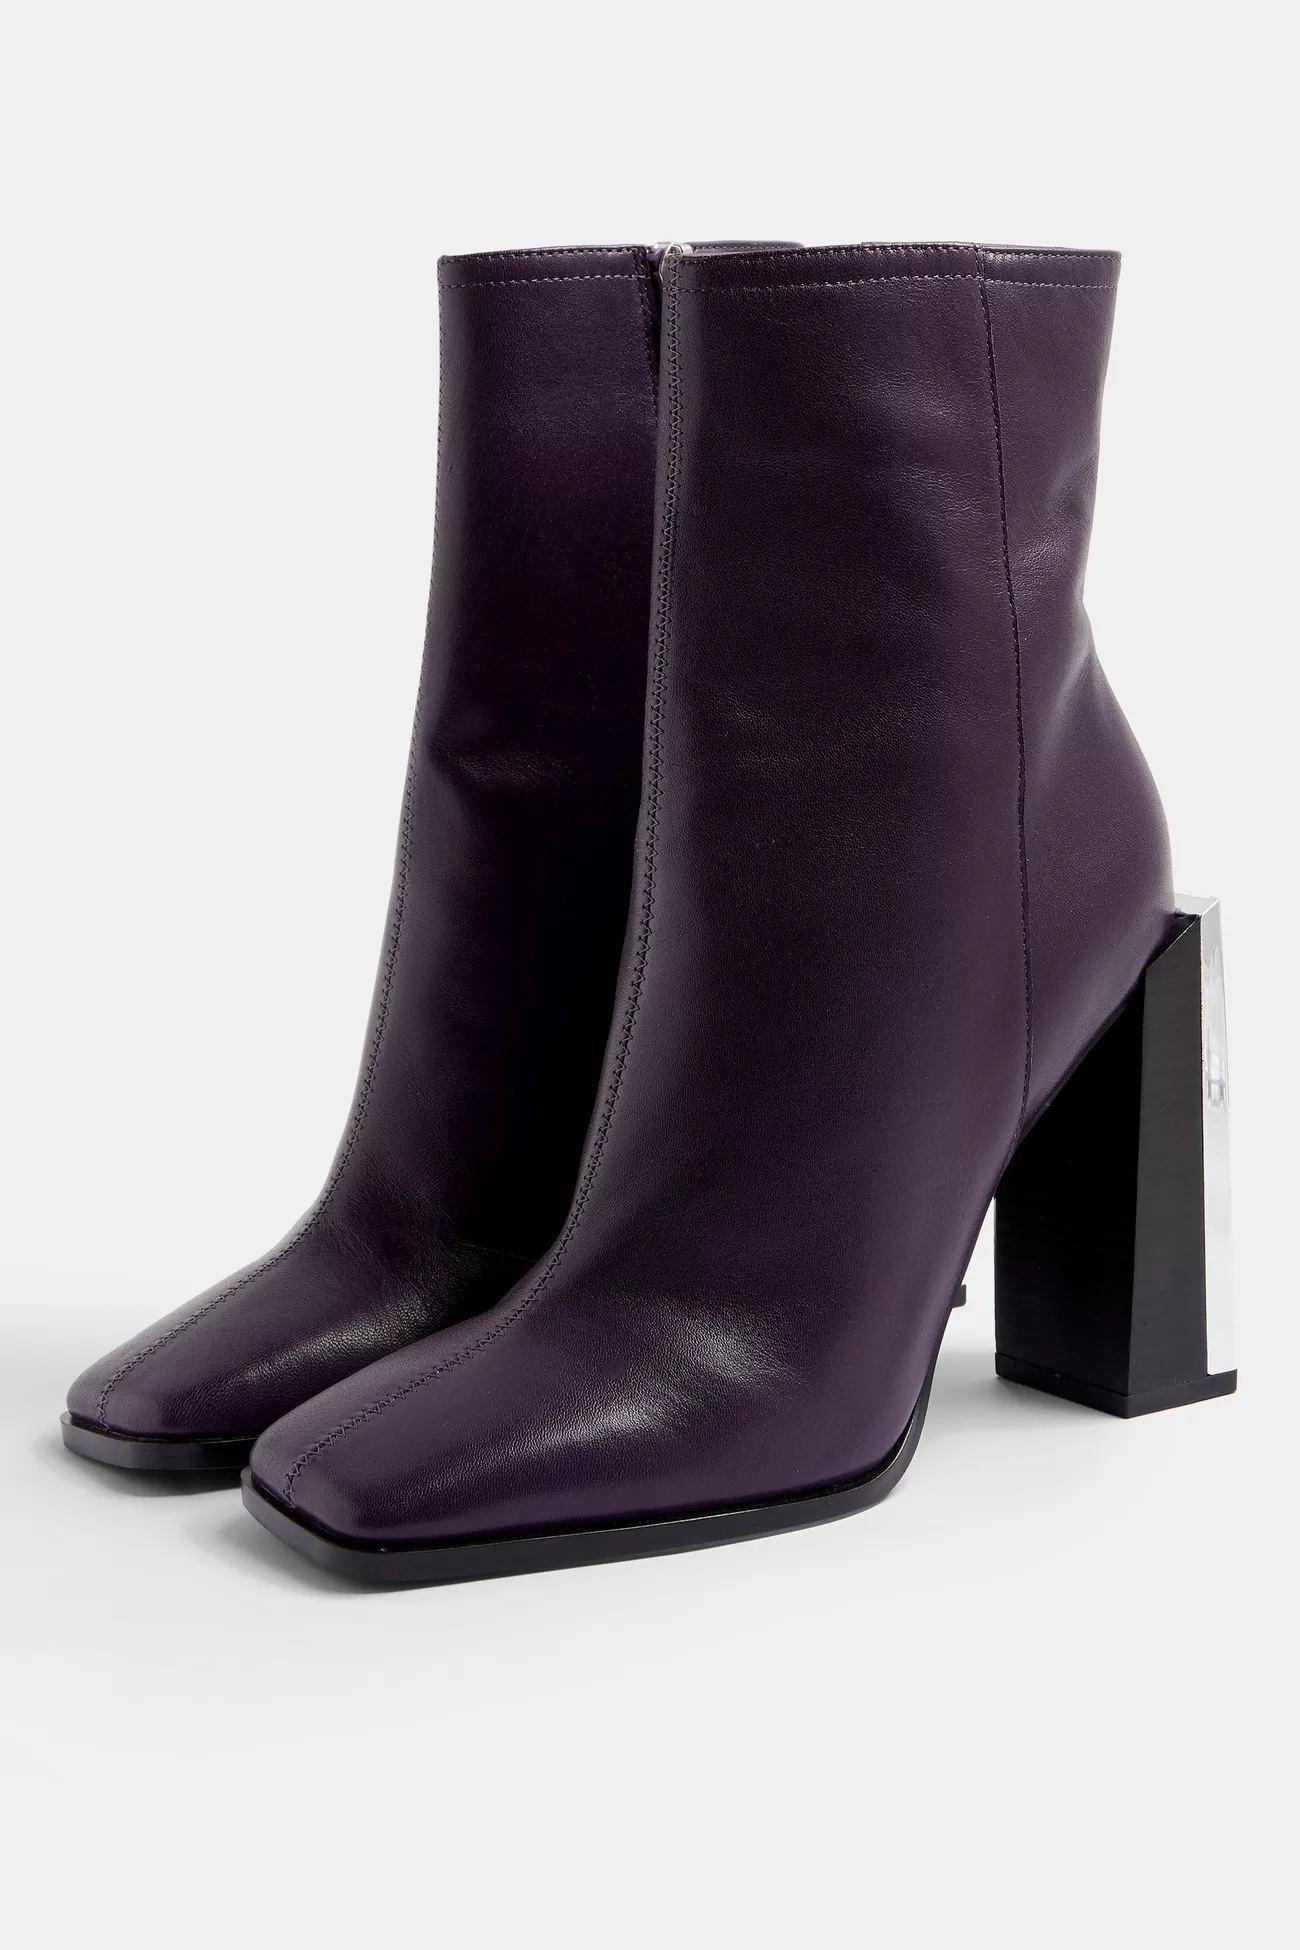 topshop purple boots